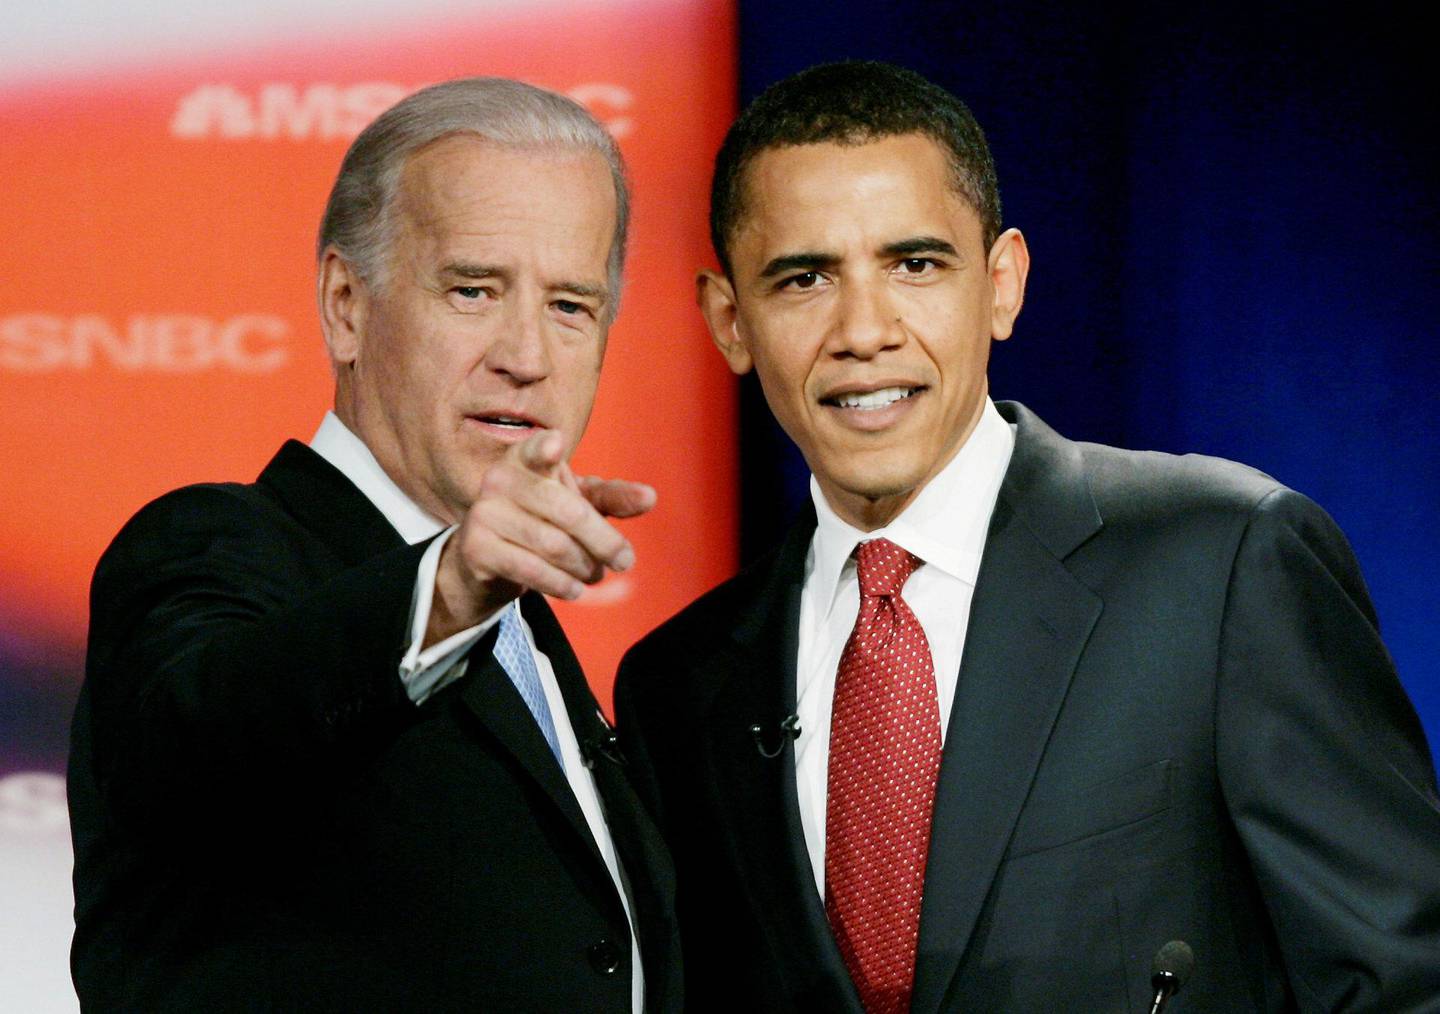 Tospann: Joe Biden var visepresident i åtte år under Barack Obama. Her fra 2008, før Obama ble valgt.   Foto: NTB scanpix
Joe Biden som 30-åring og nyvalgt senator fra Delaware 13. desember 1972. Fem dager senere ble han rammet av sitt livs store tragedie.   Foto: NTB scanpix